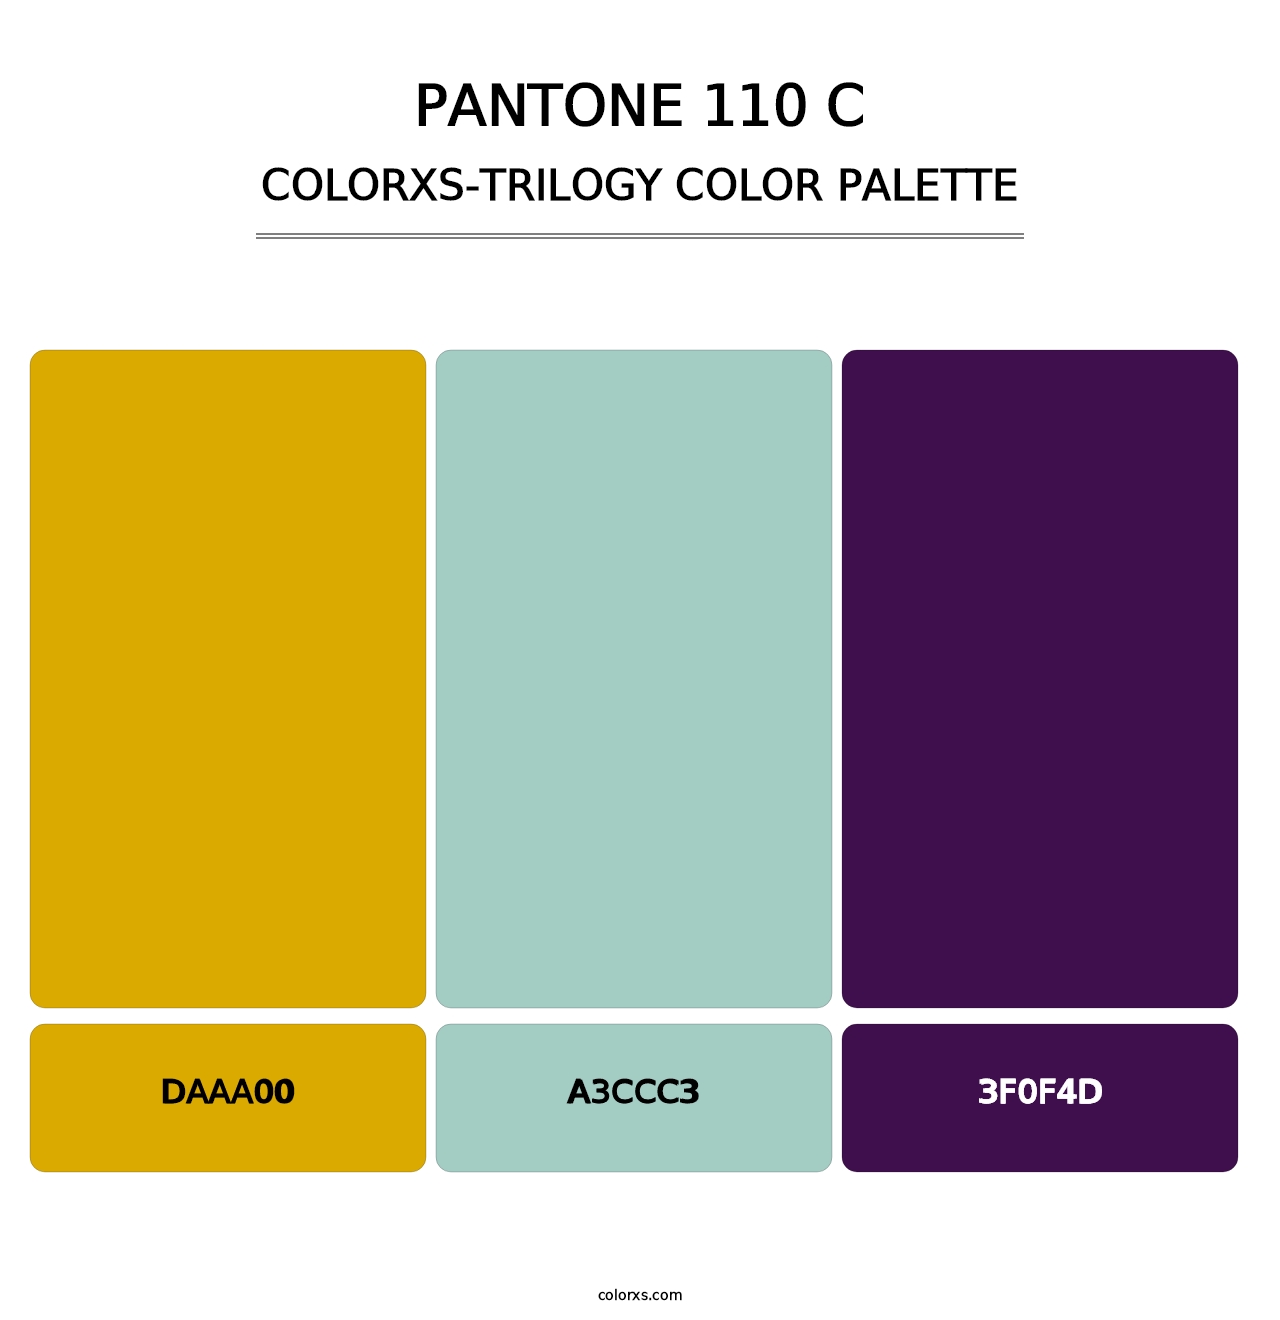 PANTONE 110 C - Colorxs Trilogy Palette